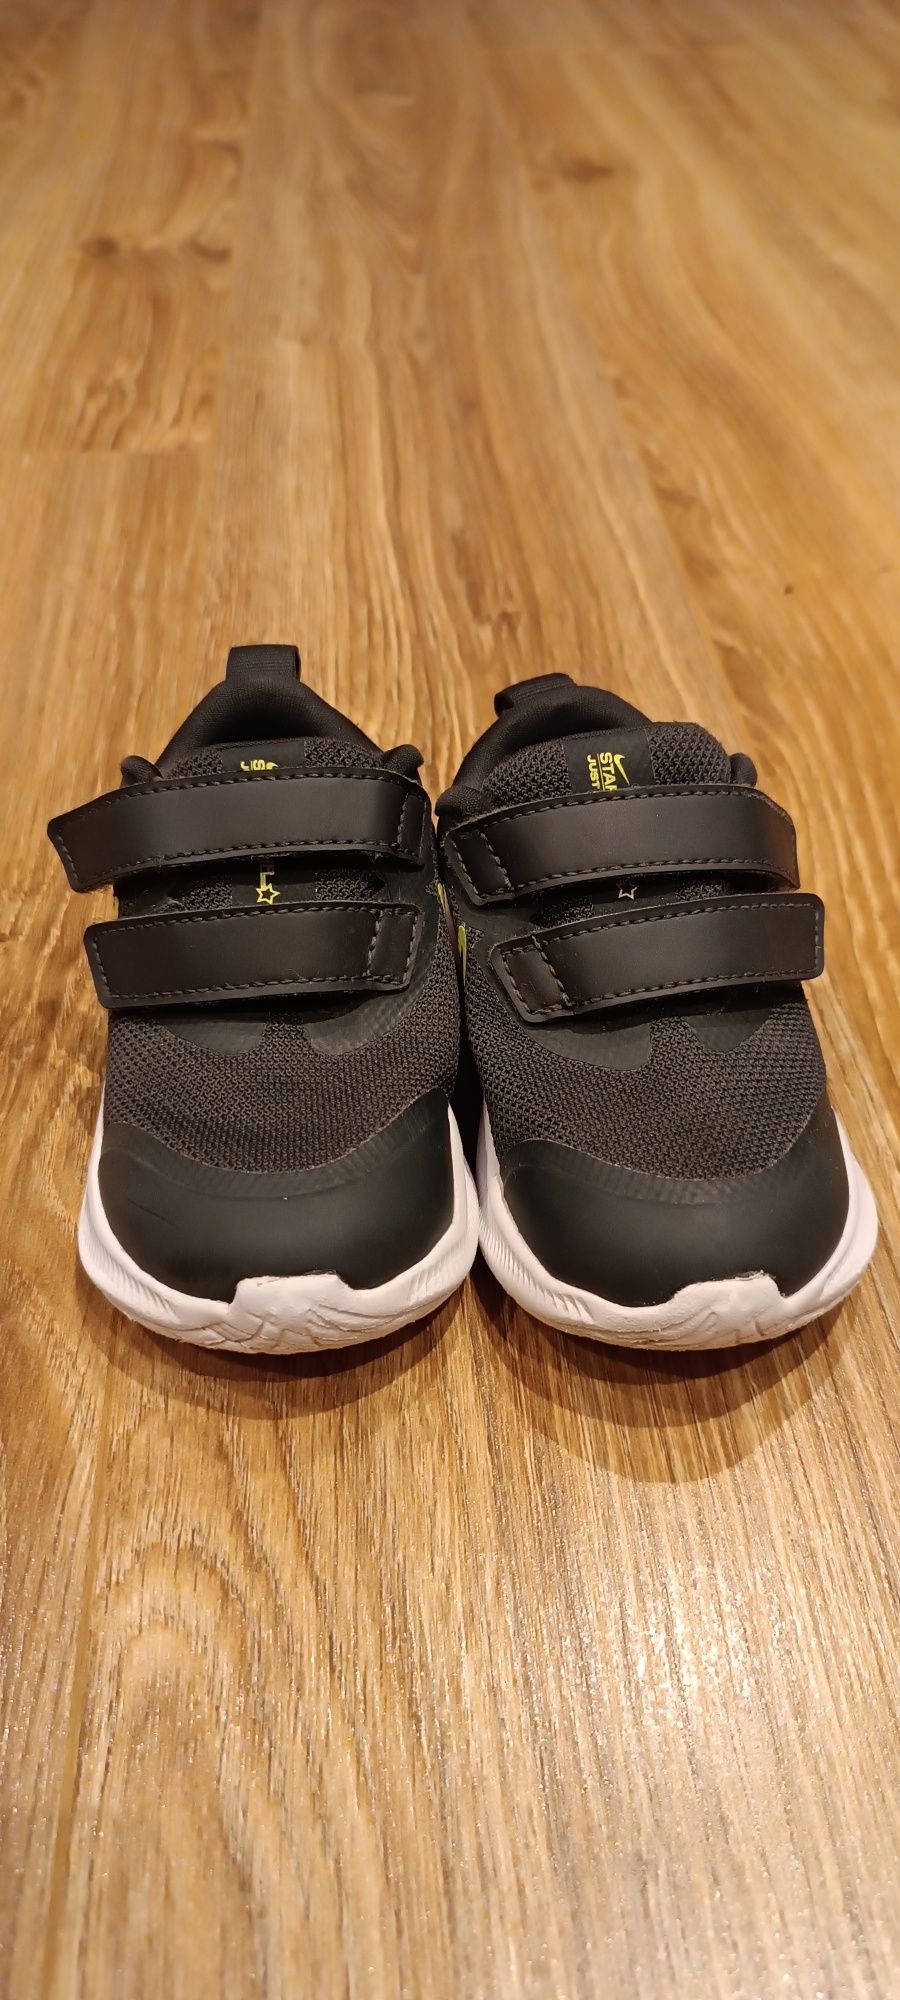 Adidasy, buty sportowe dla dzieci na rzepy Nike star runner rozmiar 22